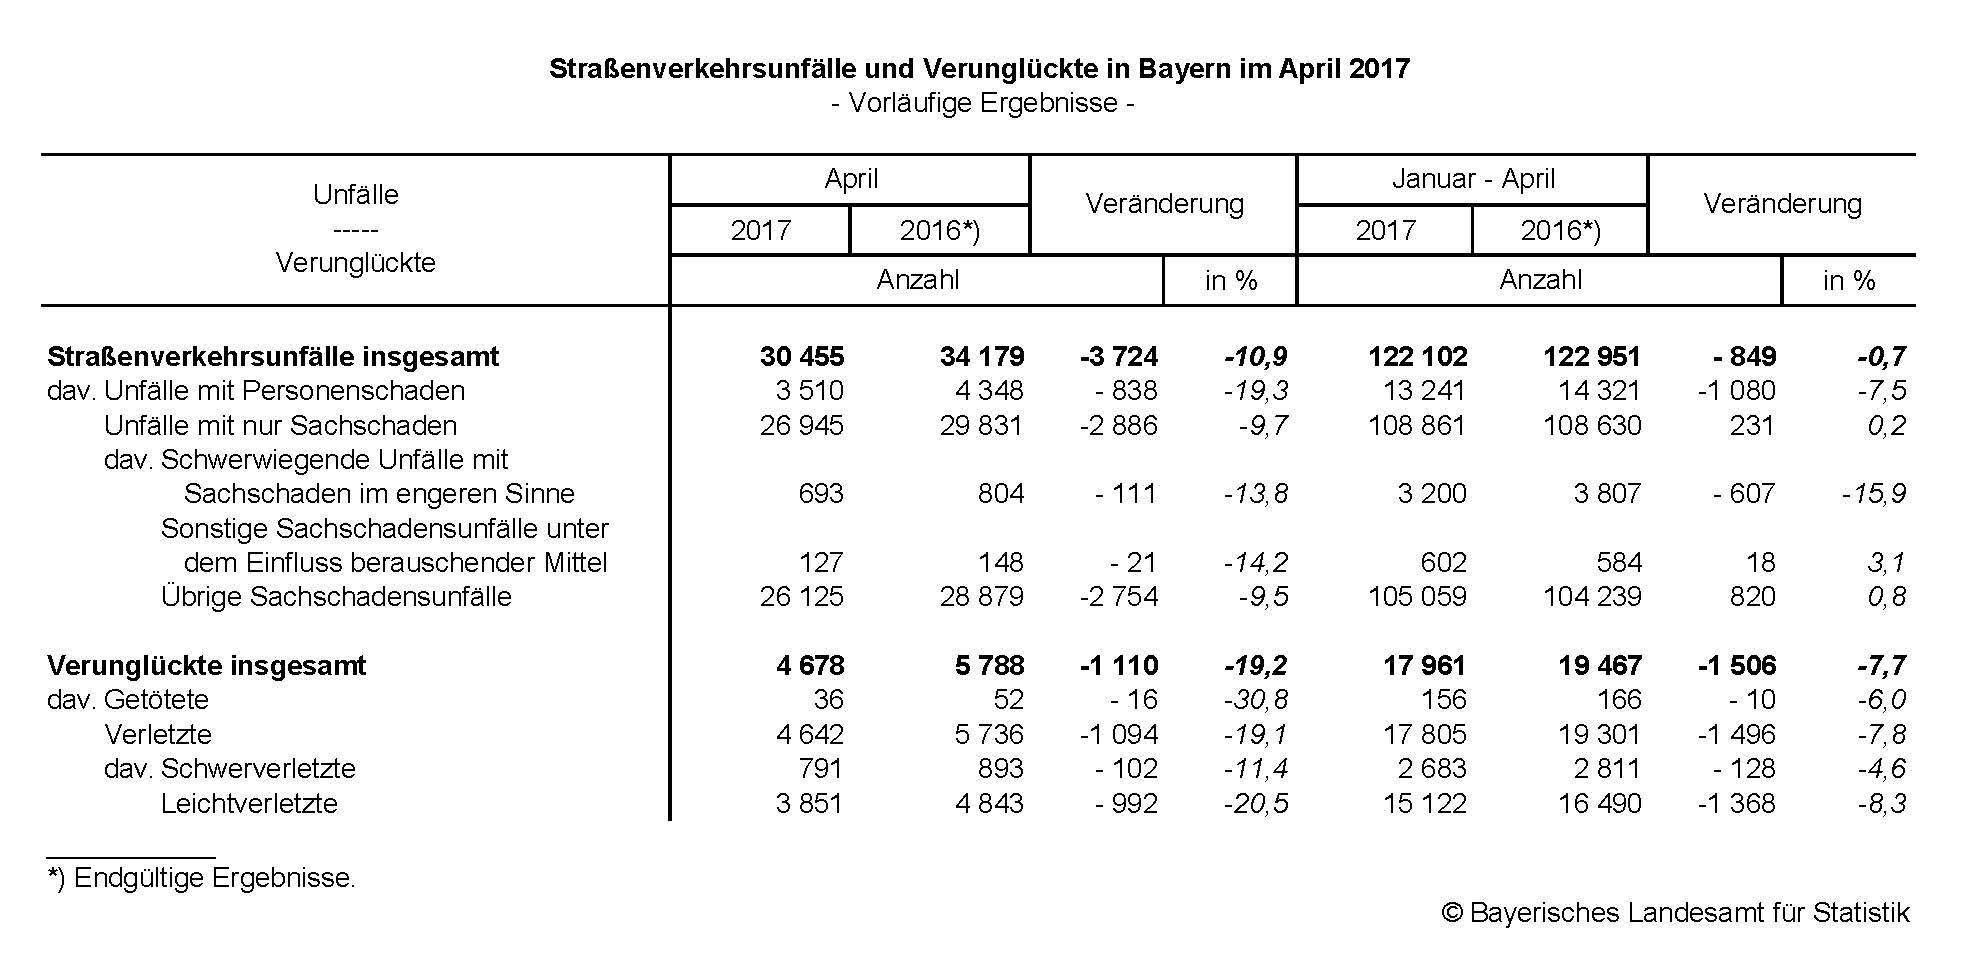 Straßenverkehrsunfälle und Verunglückte in Bayern im April 2017